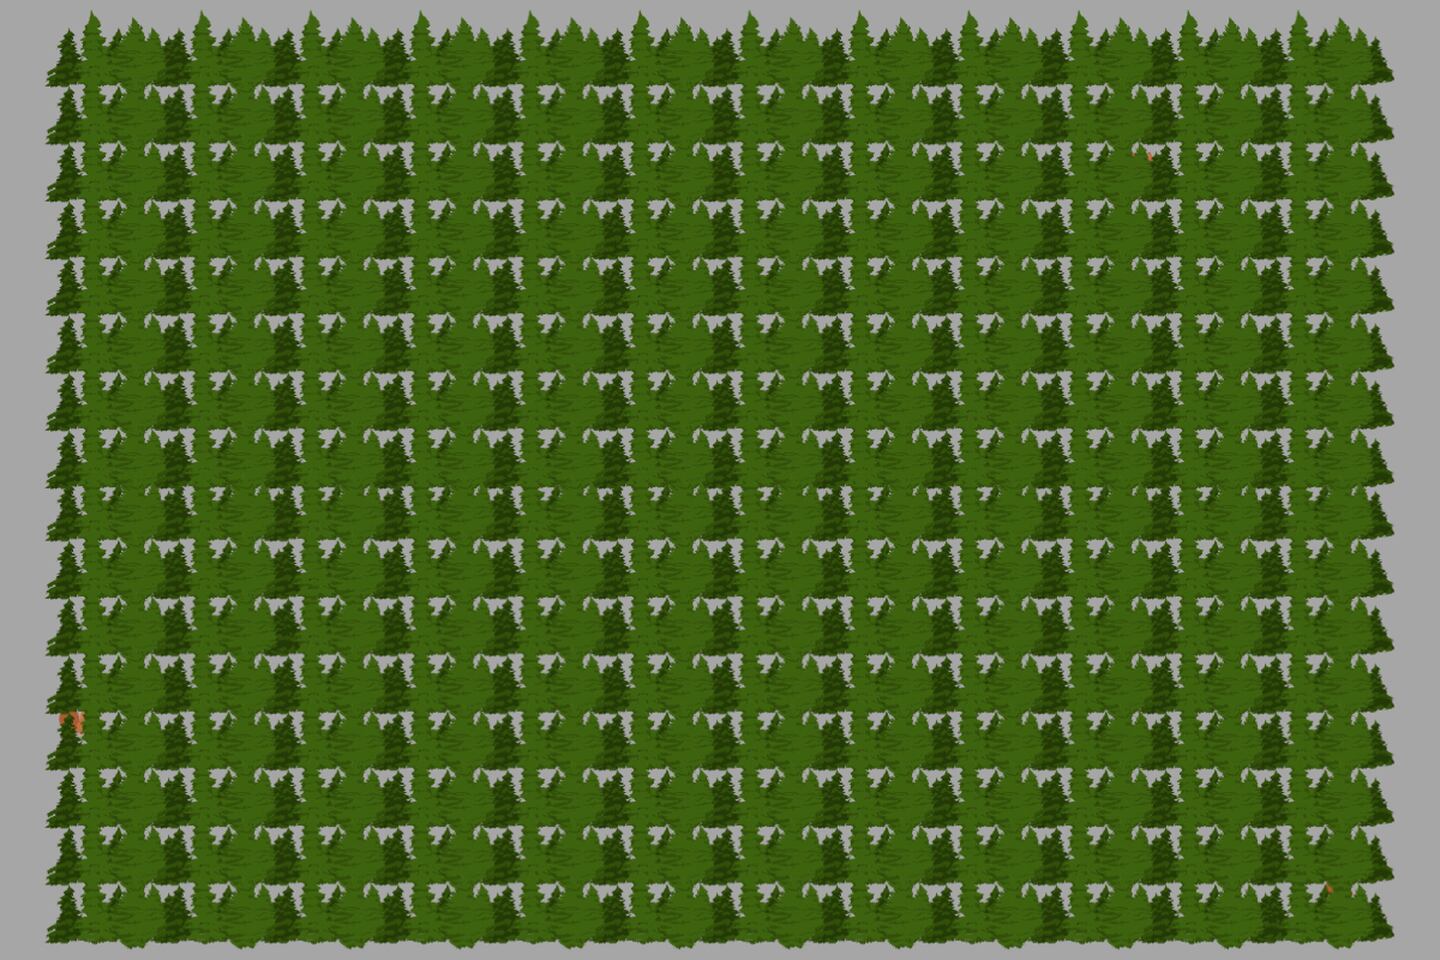 Muchos árboles que simulan un bosque, y entre ellos hay tres ardillas.